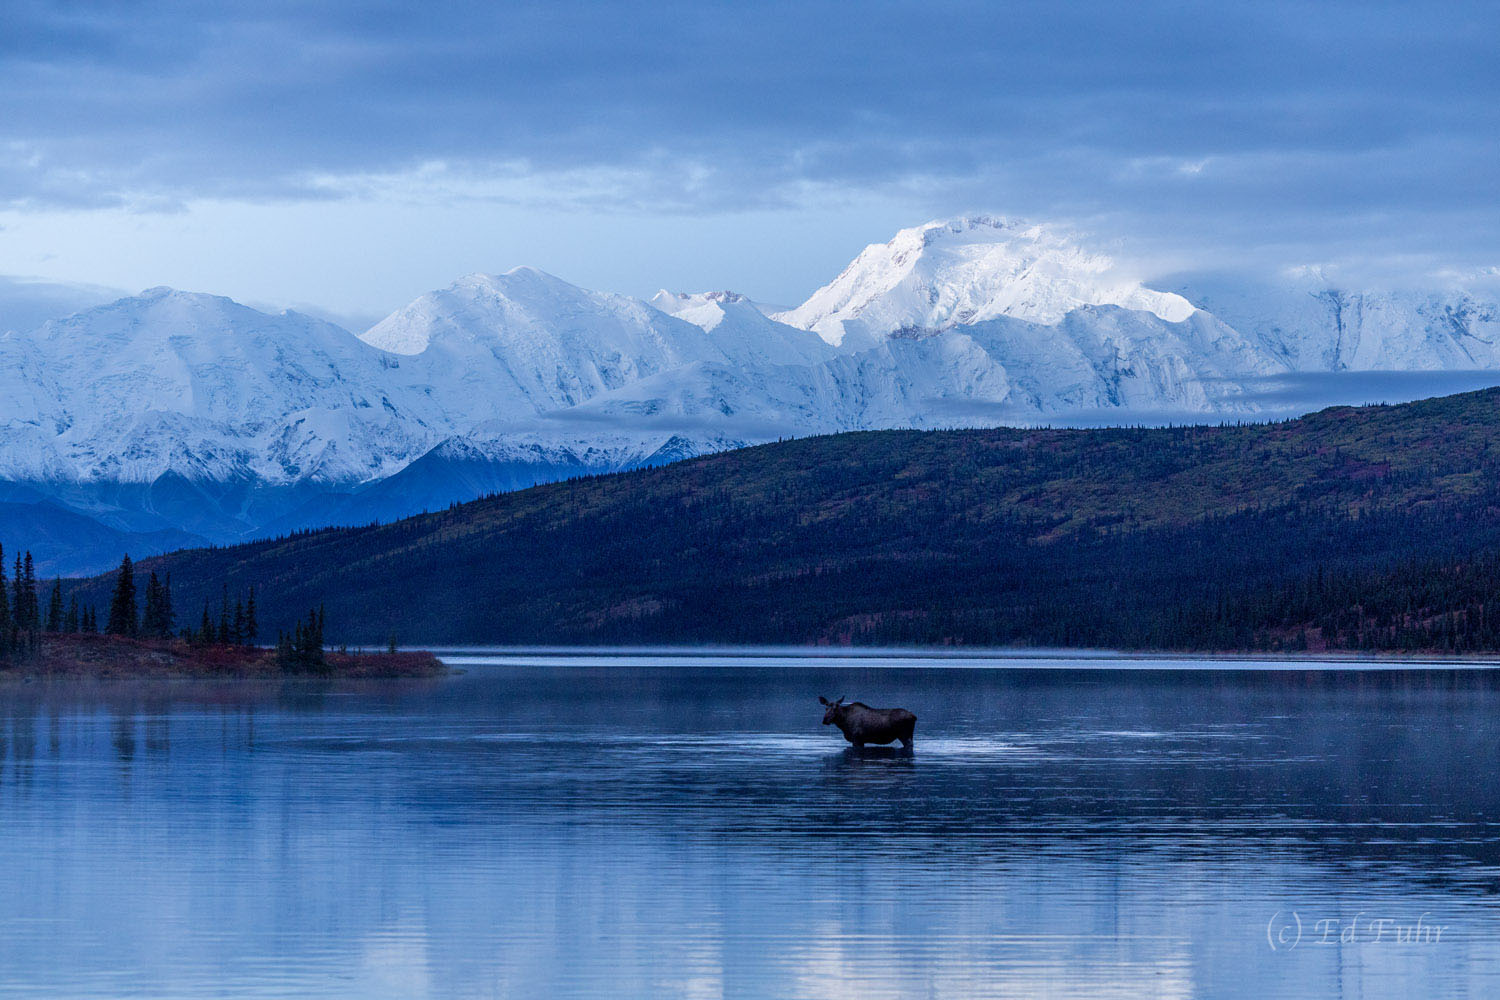 A cow moose feeds in the still waters of Wonder Lake just before sunrise, below Denali's towering peaks.